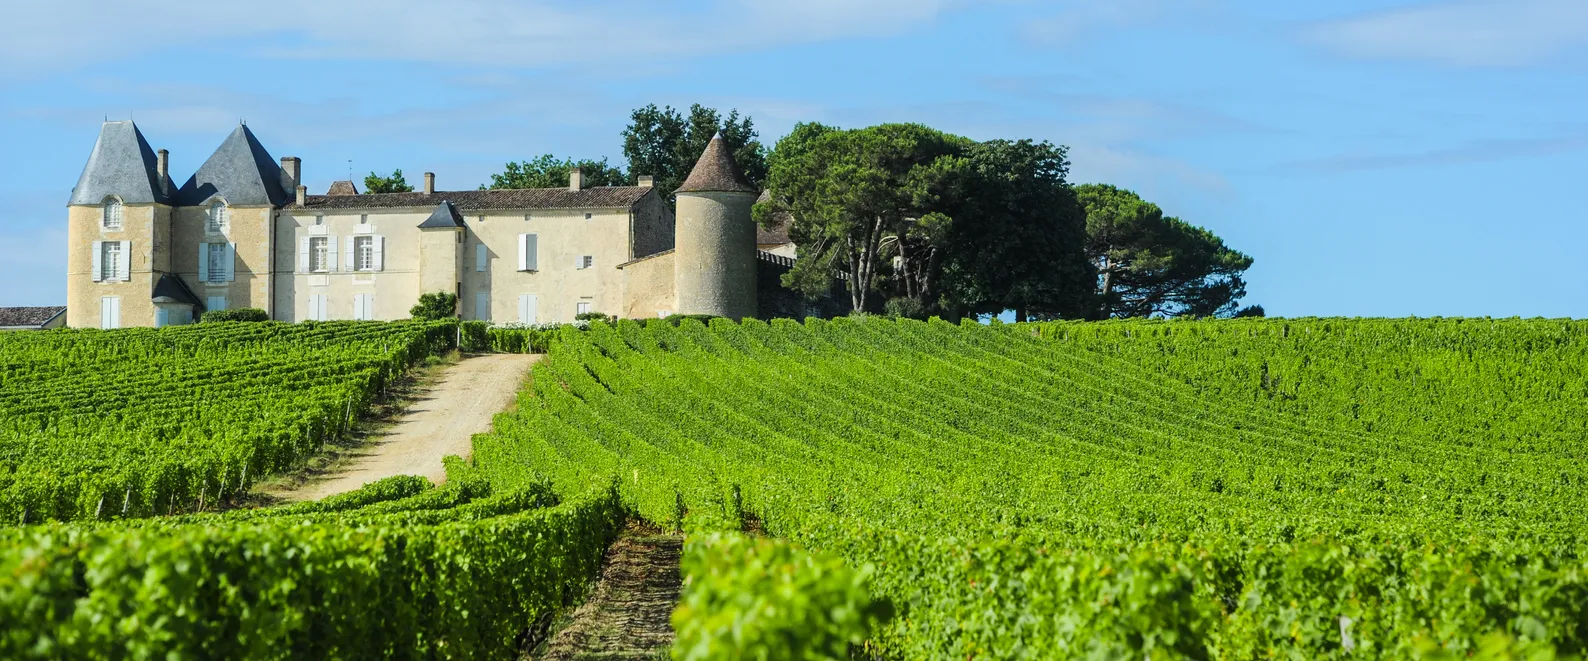 Le château d'Yquem dans le vignoble de Sauternes © iStock / Esperanza33